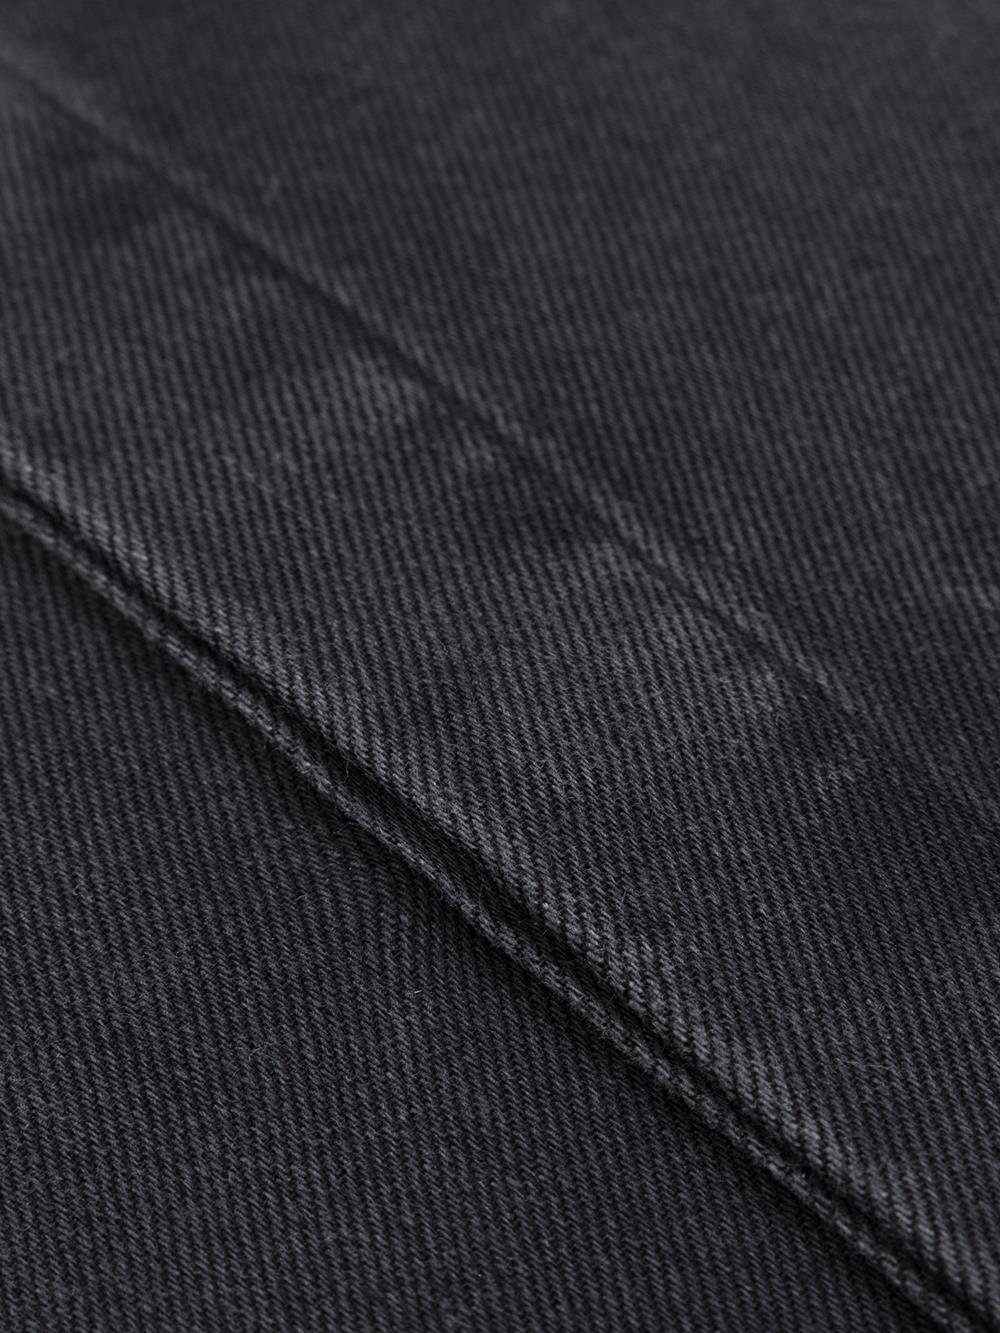 Gustavs Hemd aus schwarzem Jeansstoff - Verdeckte Knopfleiste